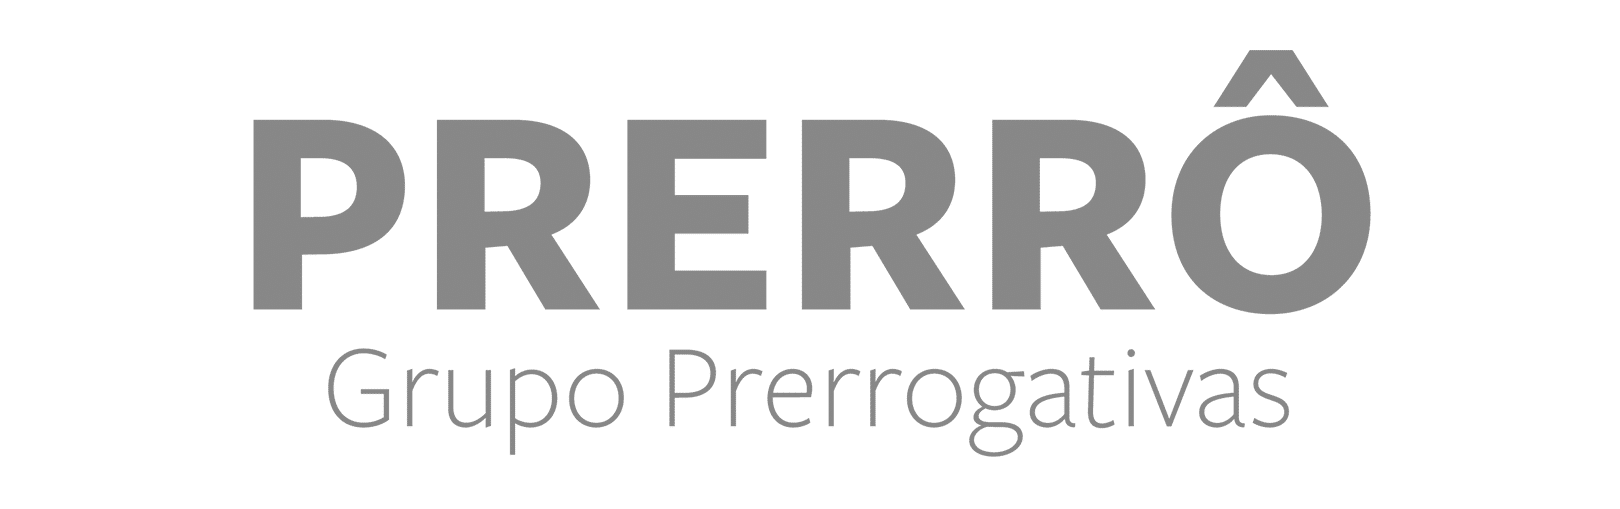 Marketing Jurídico - Grupo Prerro